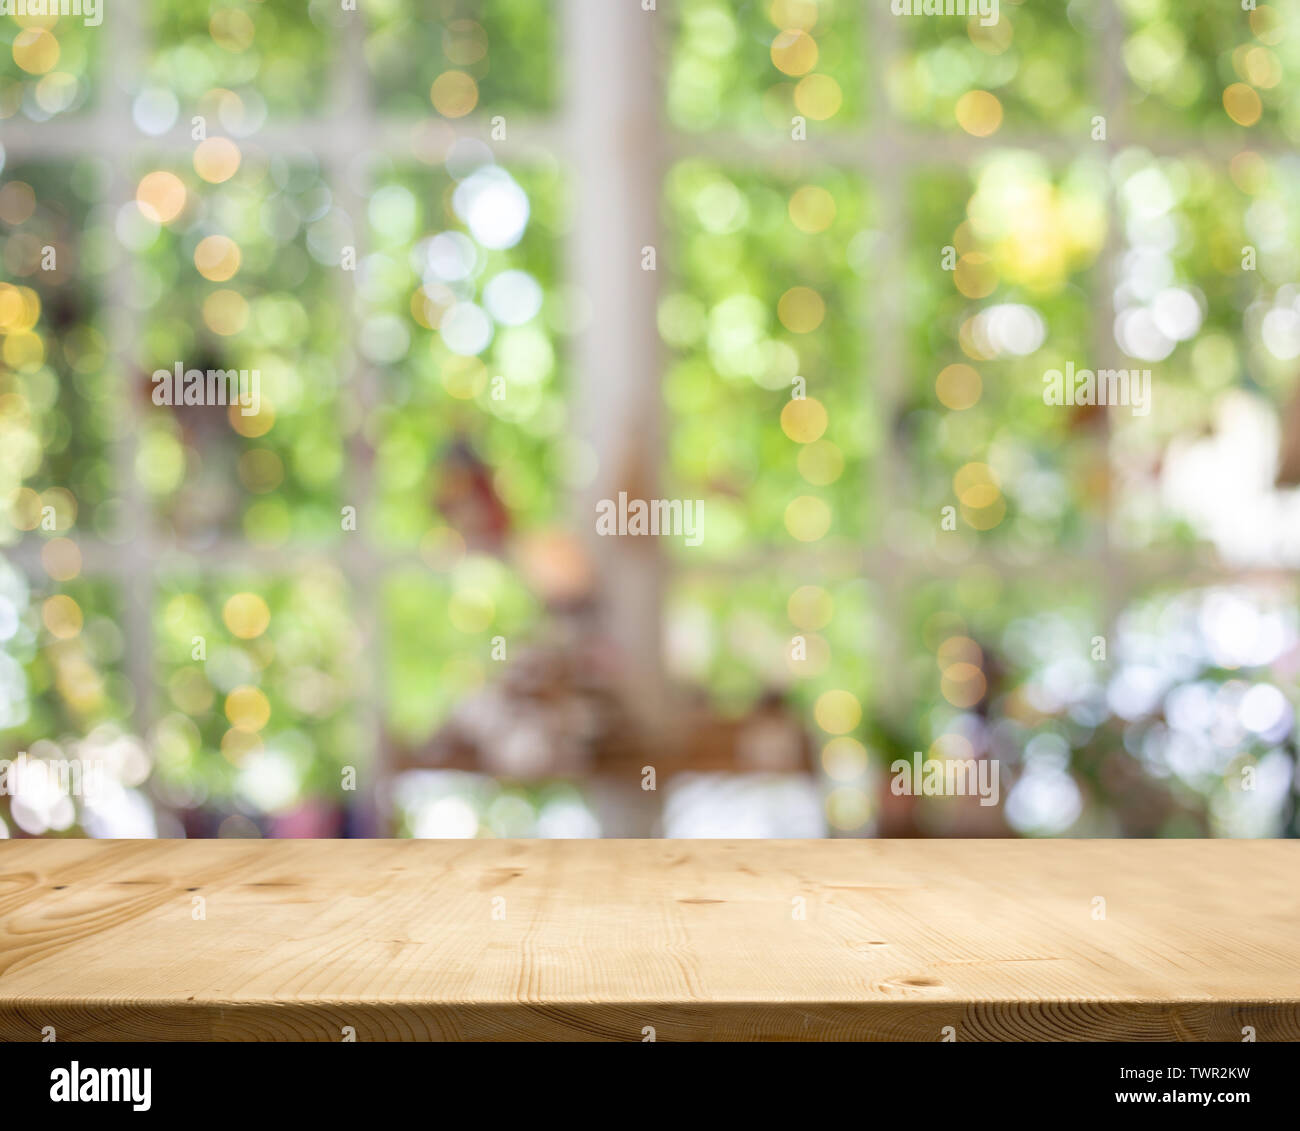 Mesa de madera jardín blanco bokeh de fondo. Se utiliza para mostrar o producto actual en estante de madera Foto de stock